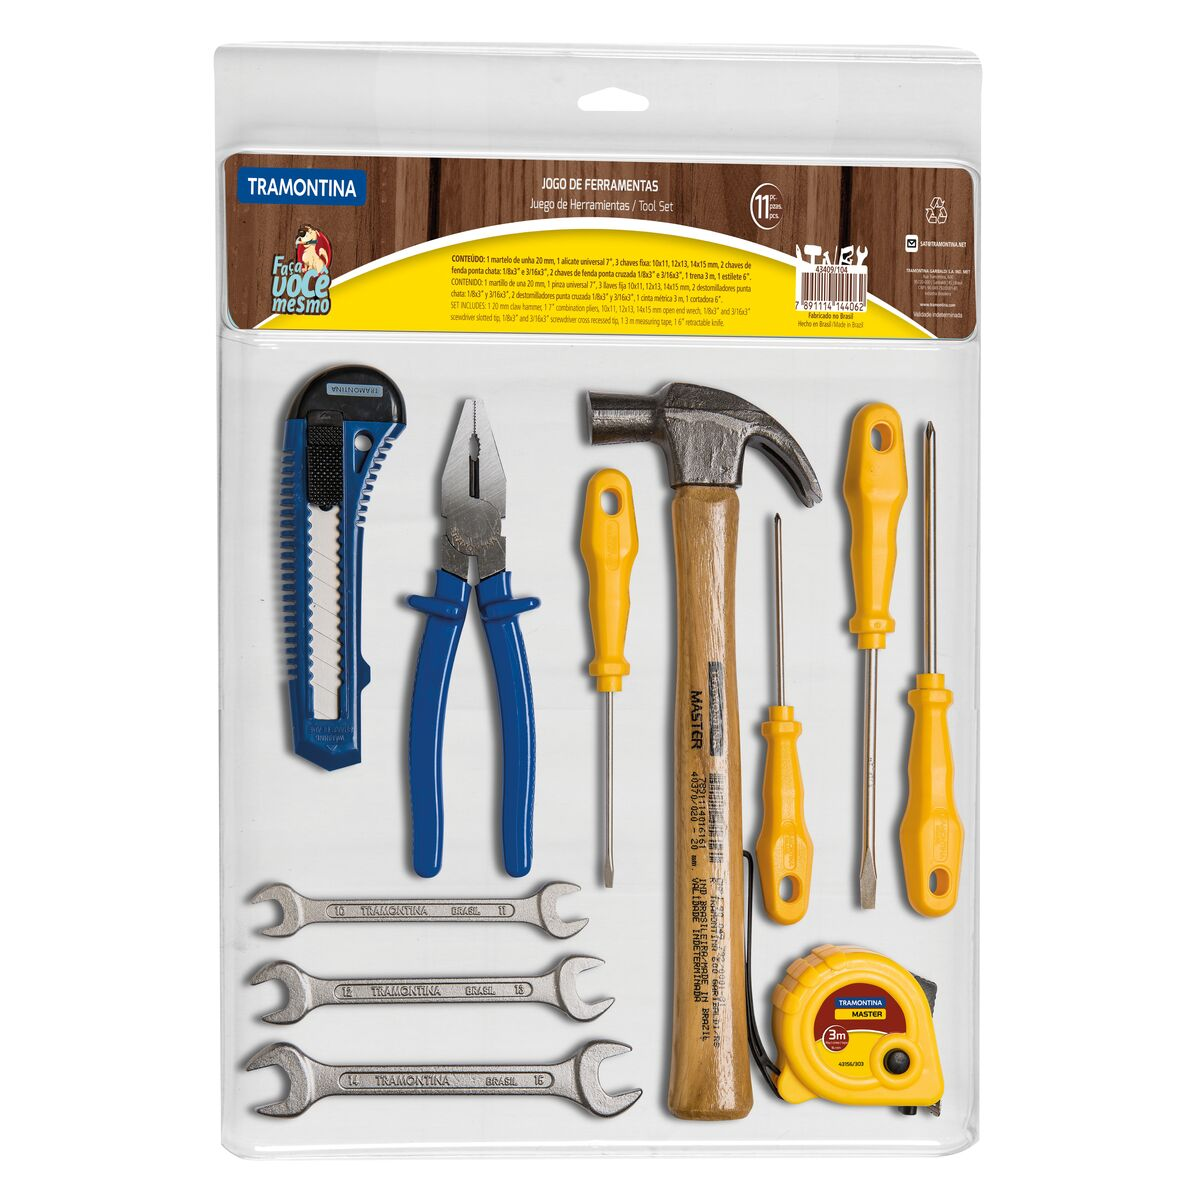 Kit de herramientas Tramontina con martillo, cinta métrica, pinza, cortadora, destornilladores y llaves fijas - 11 piezas